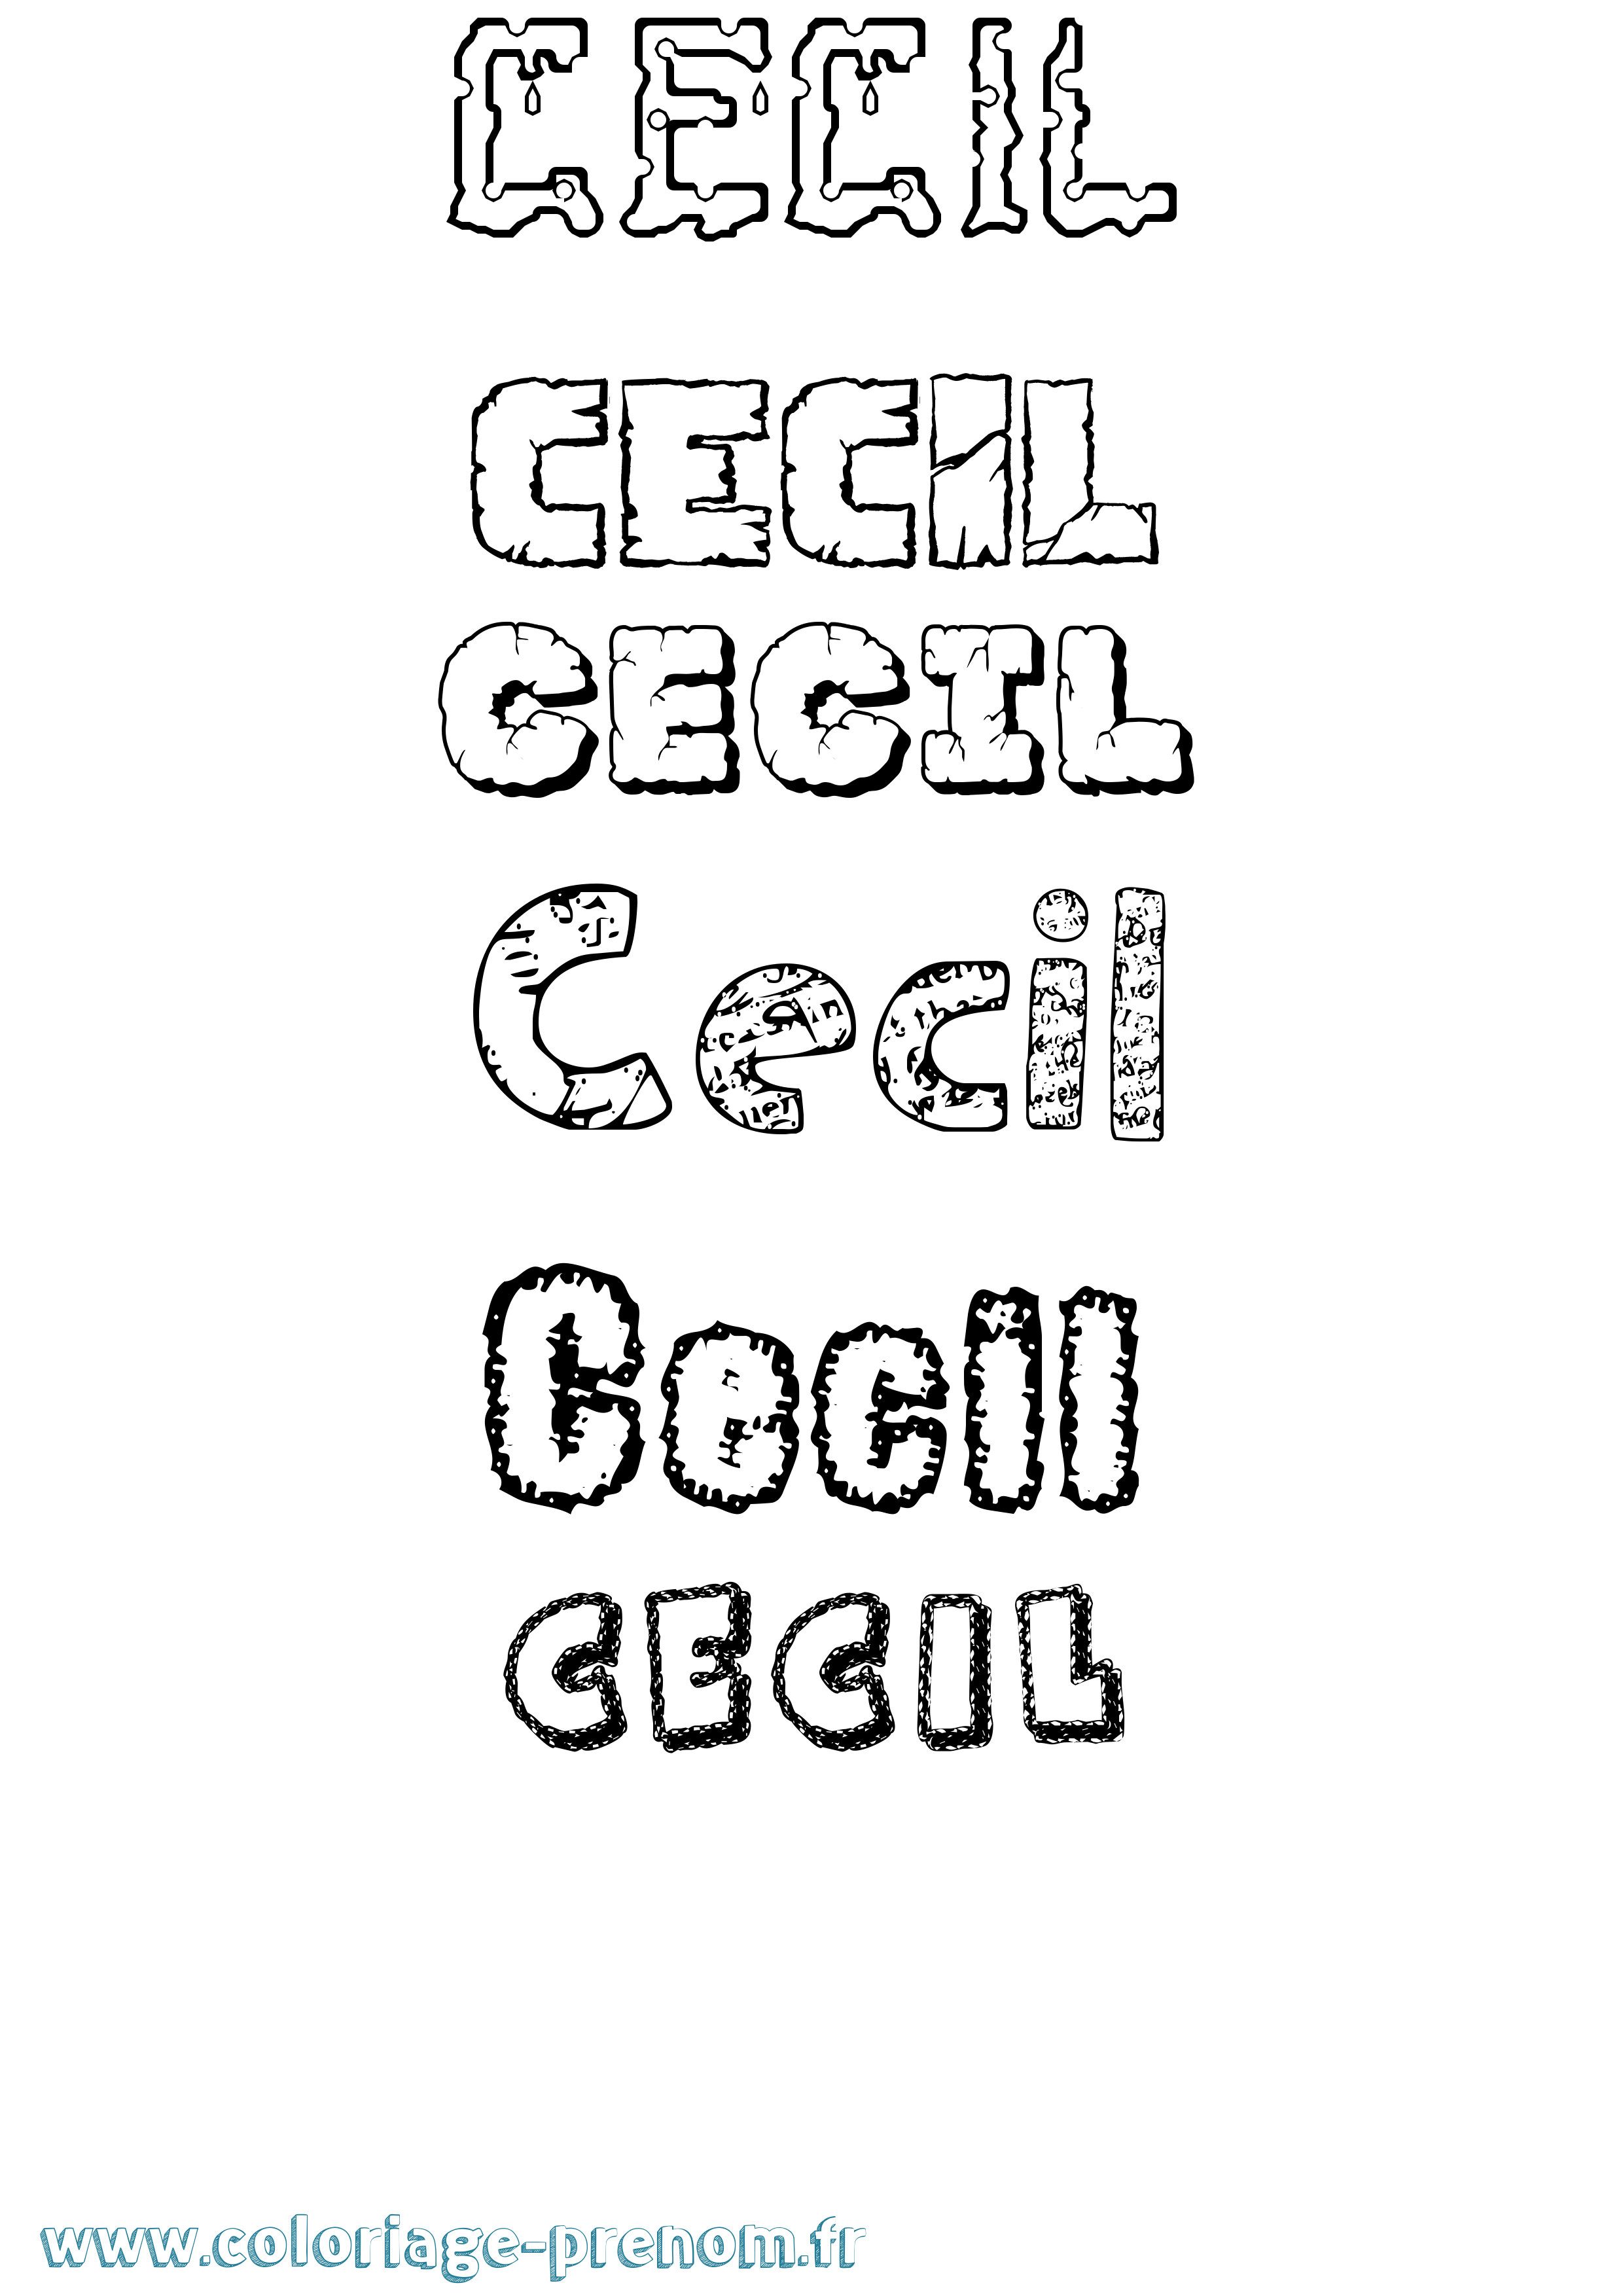 Coloriage prénom Cecil Destructuré